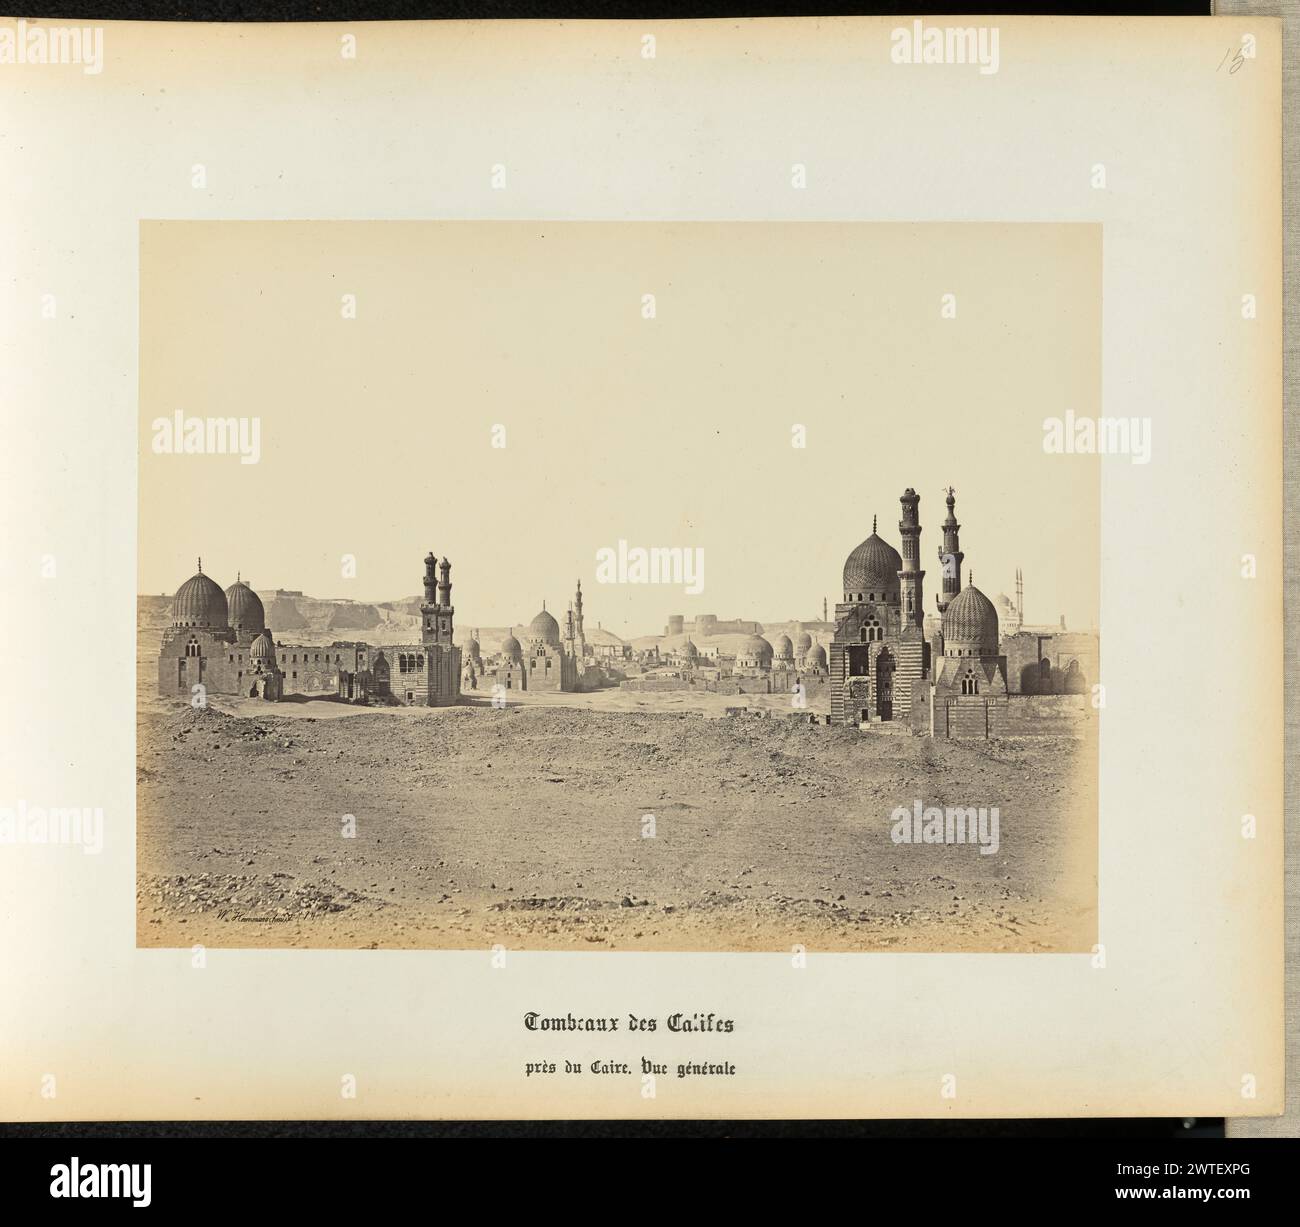 Tombes des califes. Wilhelm Hammerschmidt, photographe (allemand, né en Prusse, mort en 1869) années 1860 vue au sol des tombes de Califes vues du désert du Caire. (Recto) : en haut à droite, au crayon : '15' ; (verso) : en bas à gauche, au crayon : 'a 32 27 (Hamm)' Banque D'Images